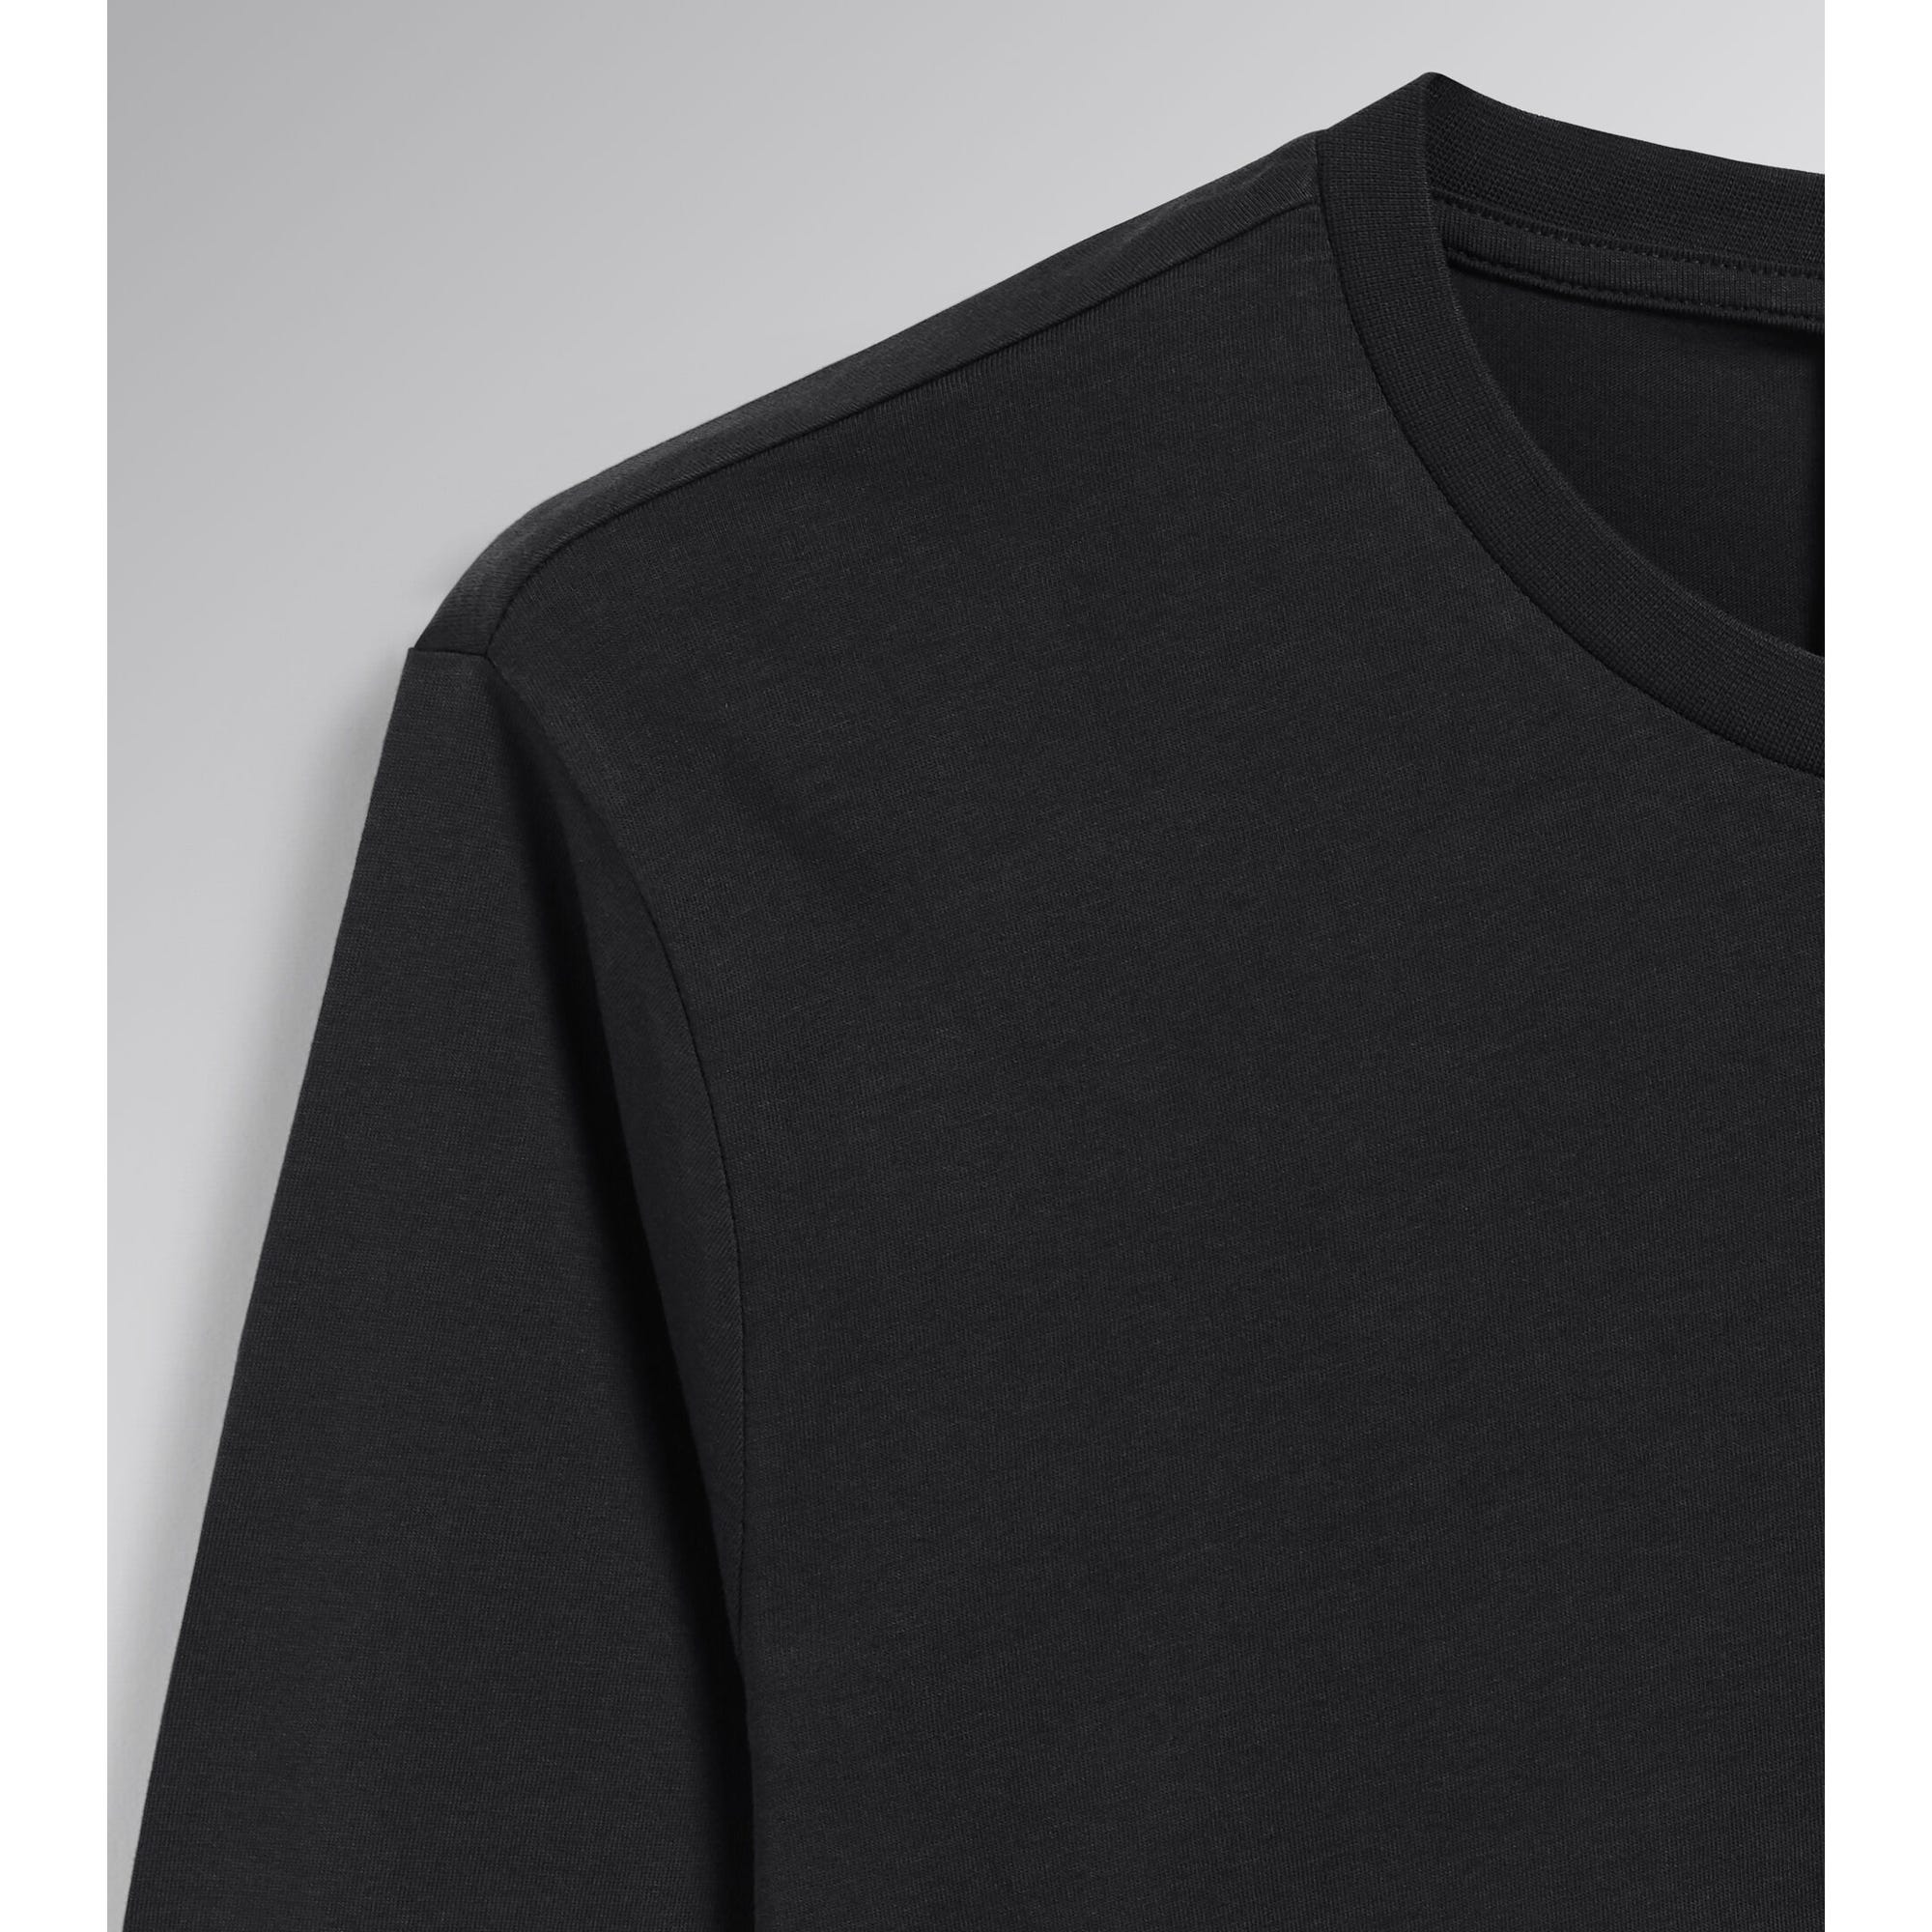 T-shirt de travail bio à manches longues éco-responsable Diadora ML Mono Organic Noir 3XL 4